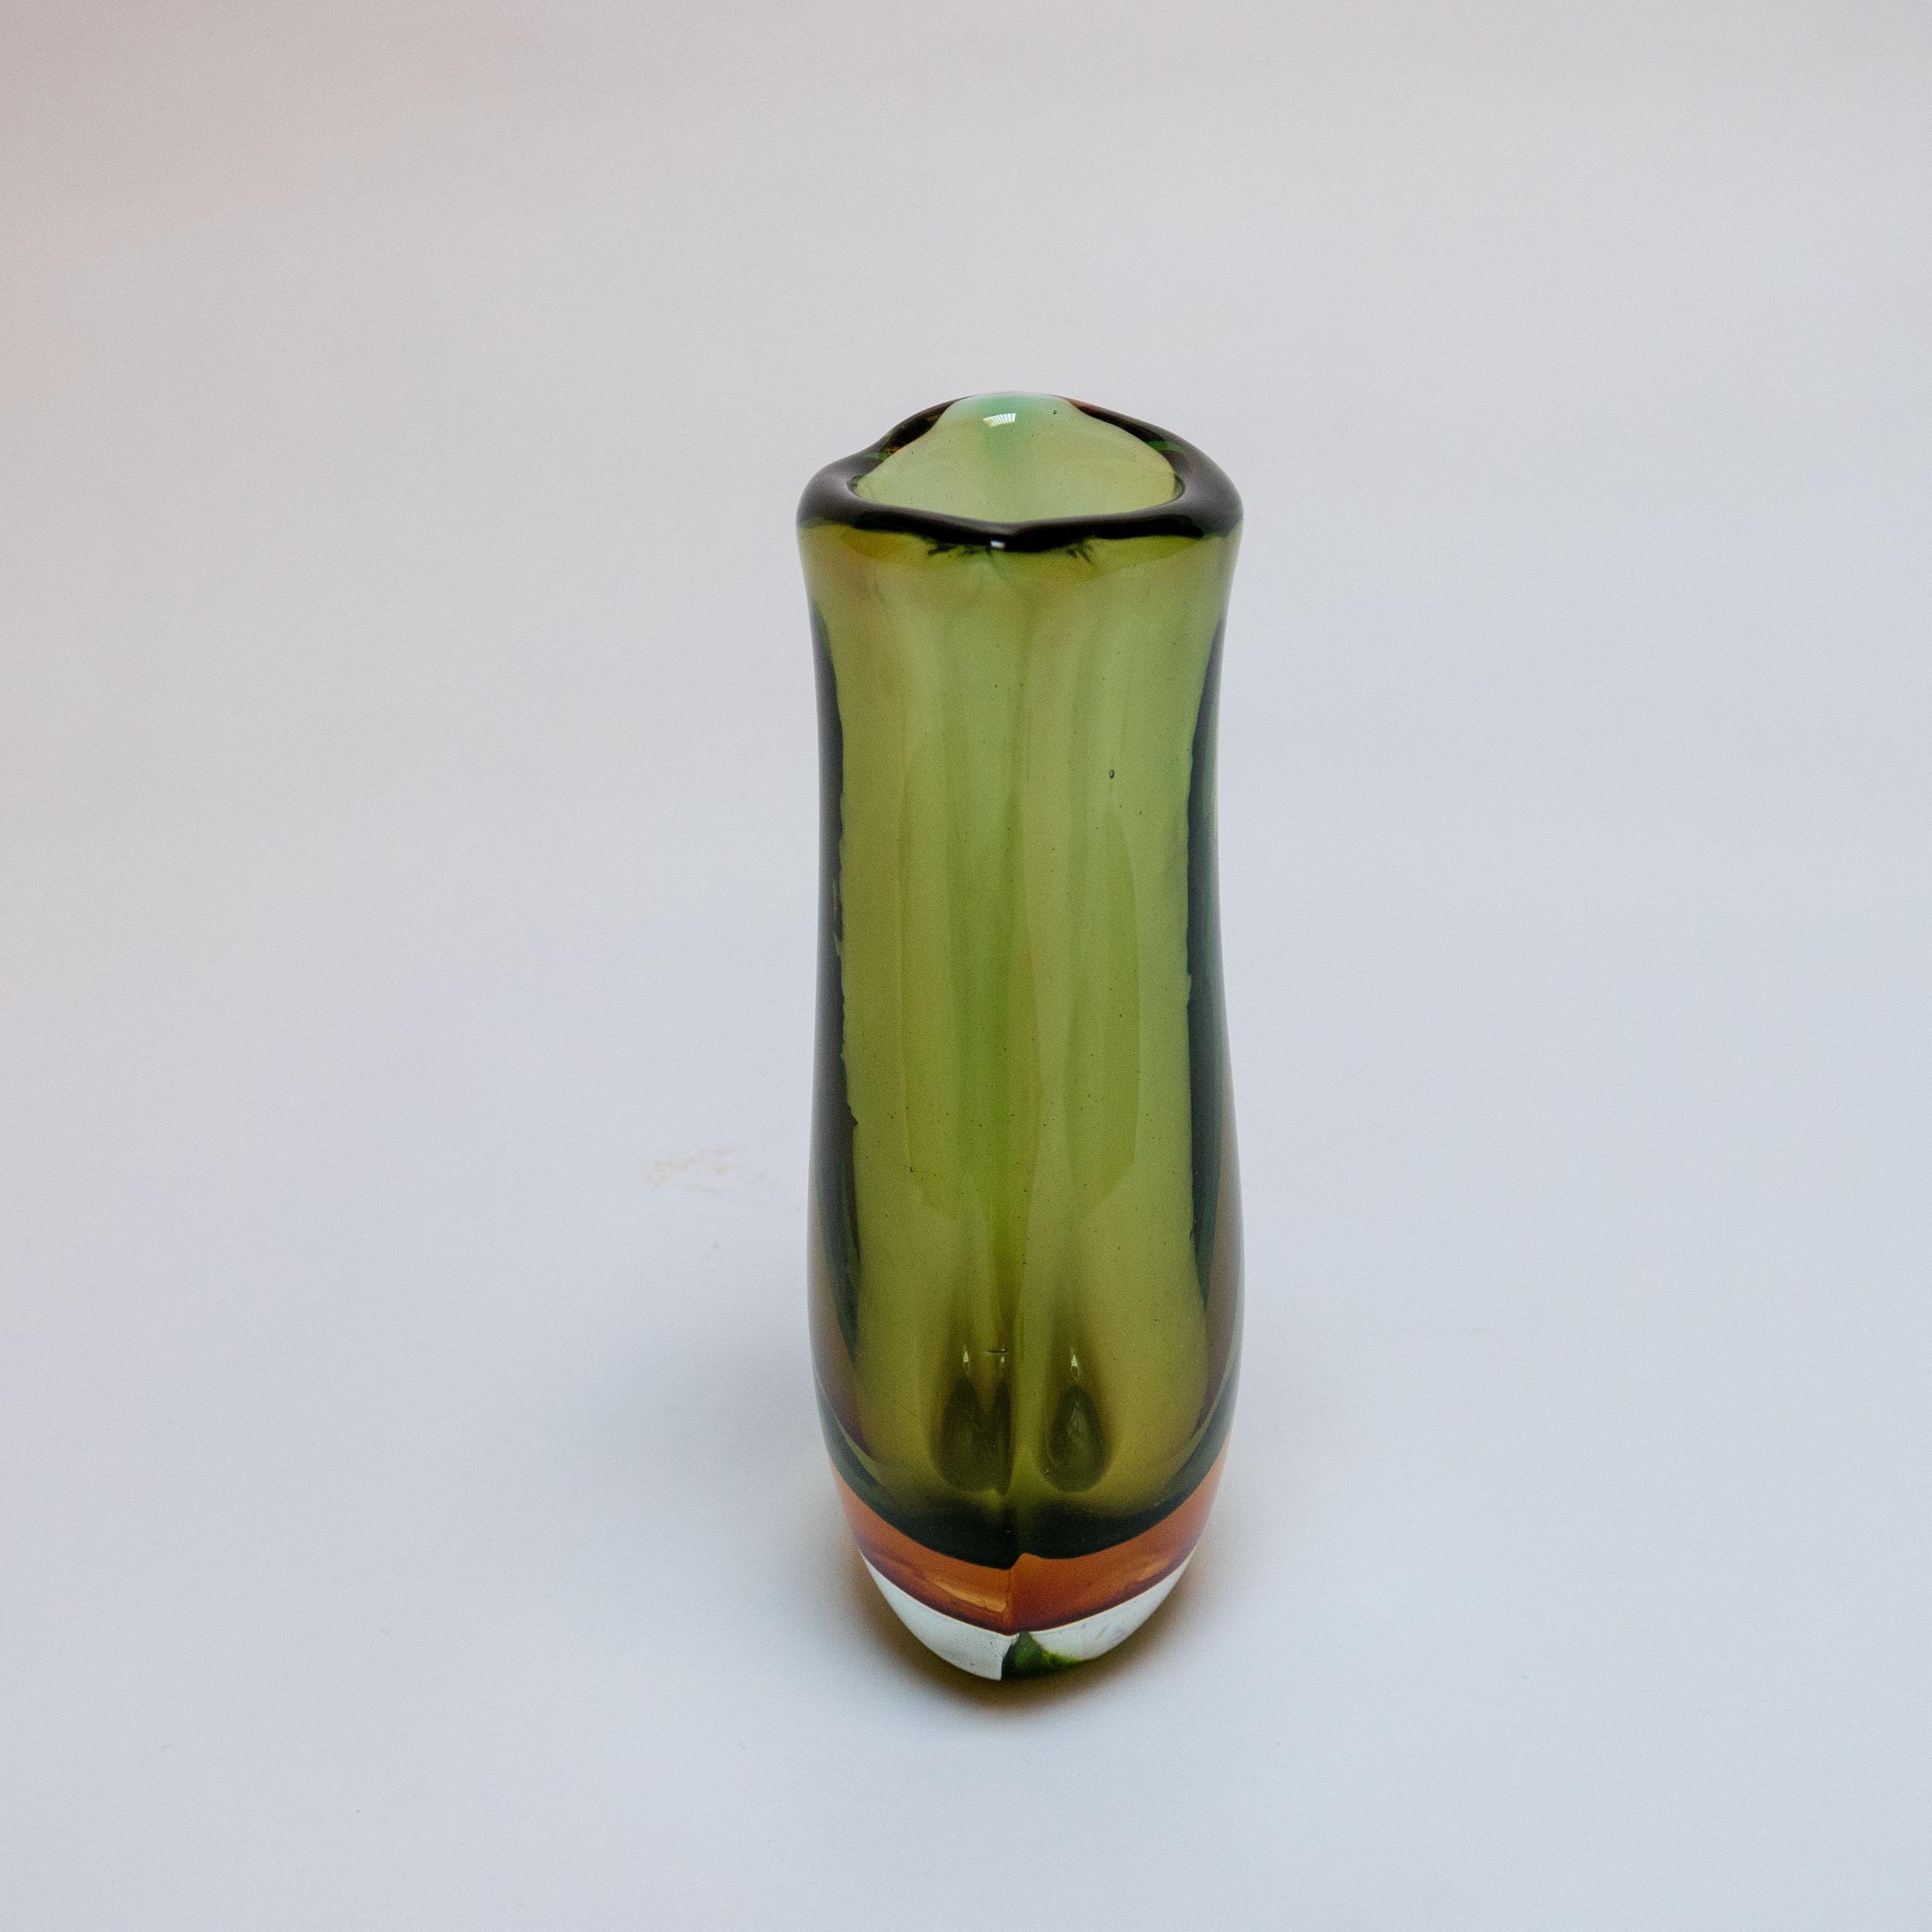 Auf der Insel Murano werden viele verschiedene Glasarten hergestellt. Aus geblasenem, geformtem oder gepresstem Glas werden Gegenstände aller Art hergestellt, von Schalen und Vasen bis hin zu Skulpturen und Kronleuchtern. Die Farbe kann dann noch